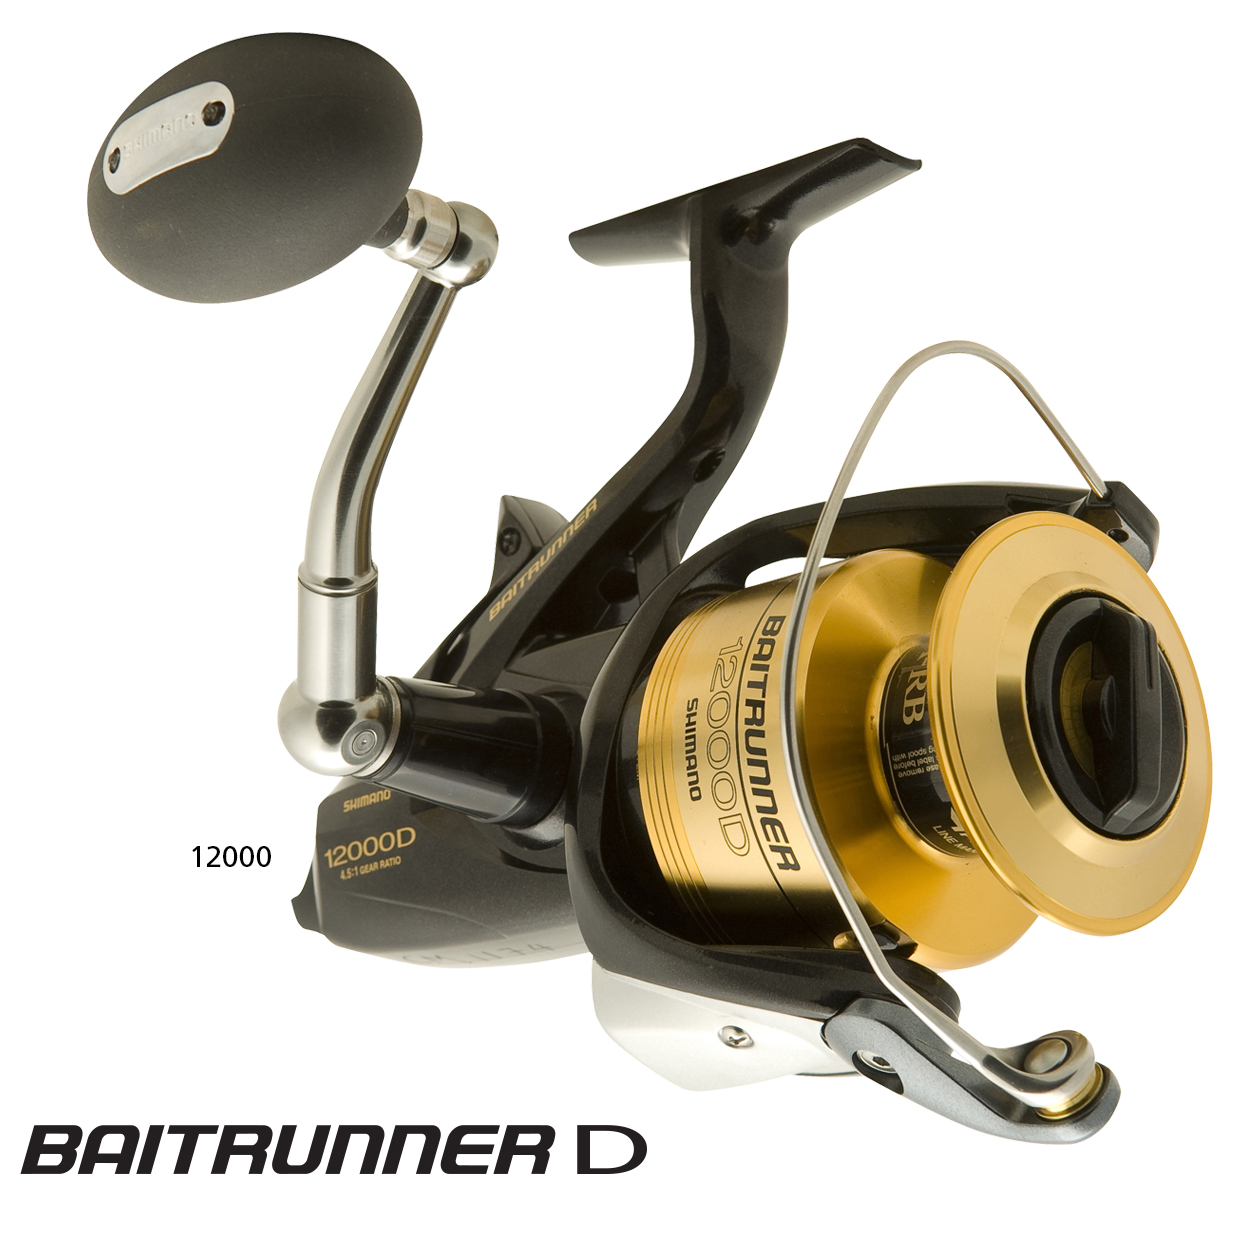 Shimano Baitrunner D Baitrunner Reel - Compleat Angler Ringwood